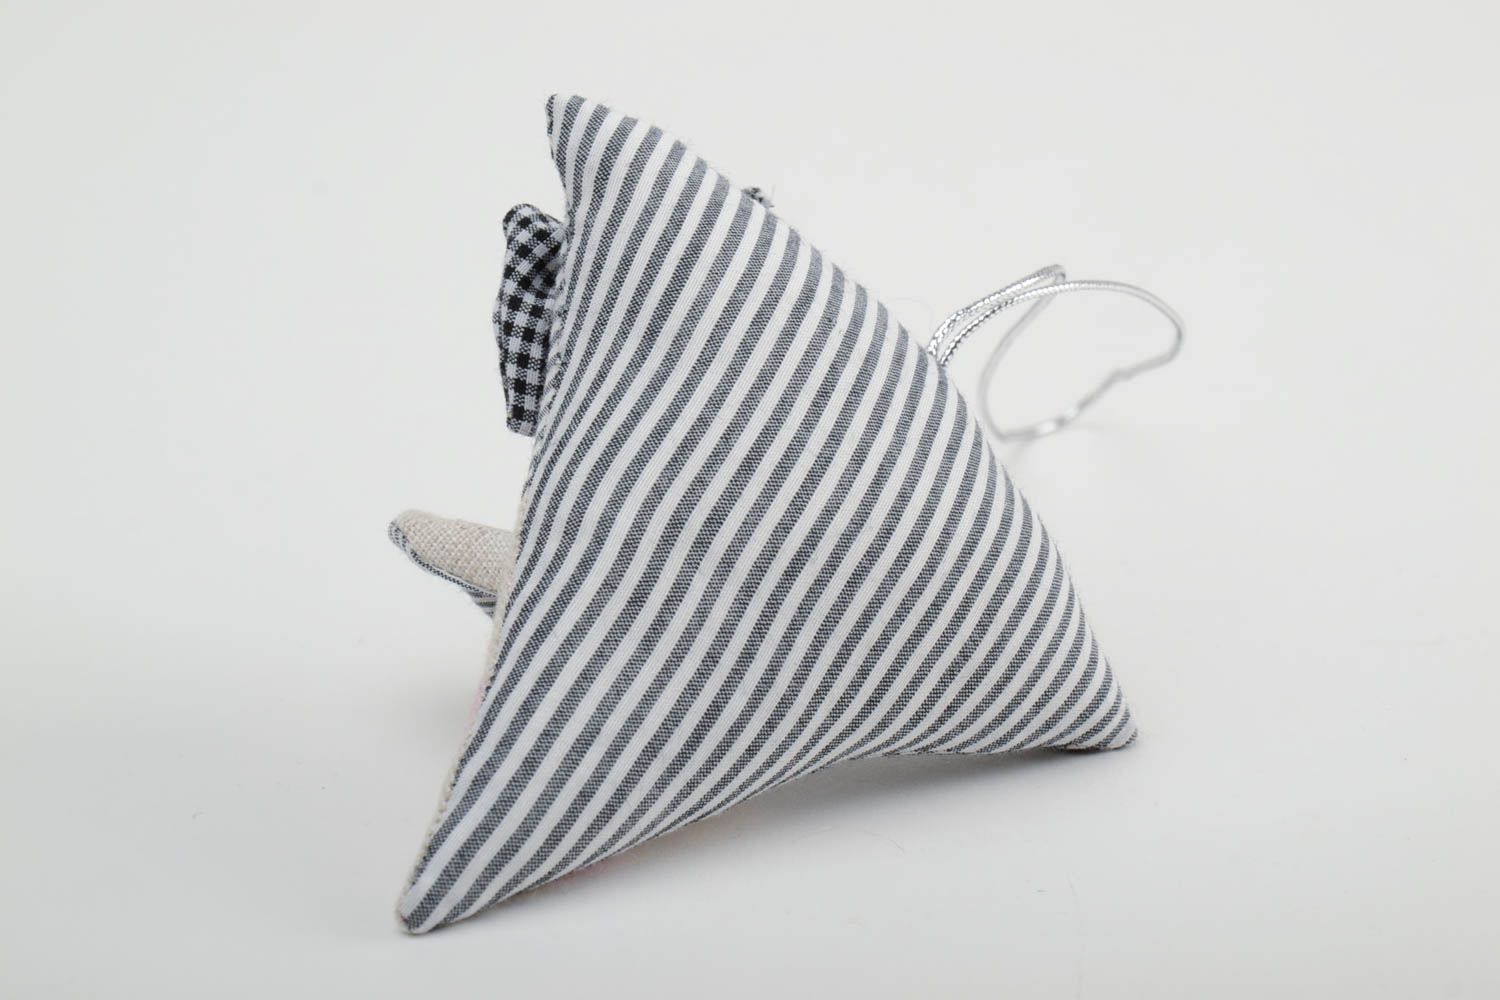 Интерьерная подвеска мышка из ткани игрушка для дома ручной работы милая фото 4